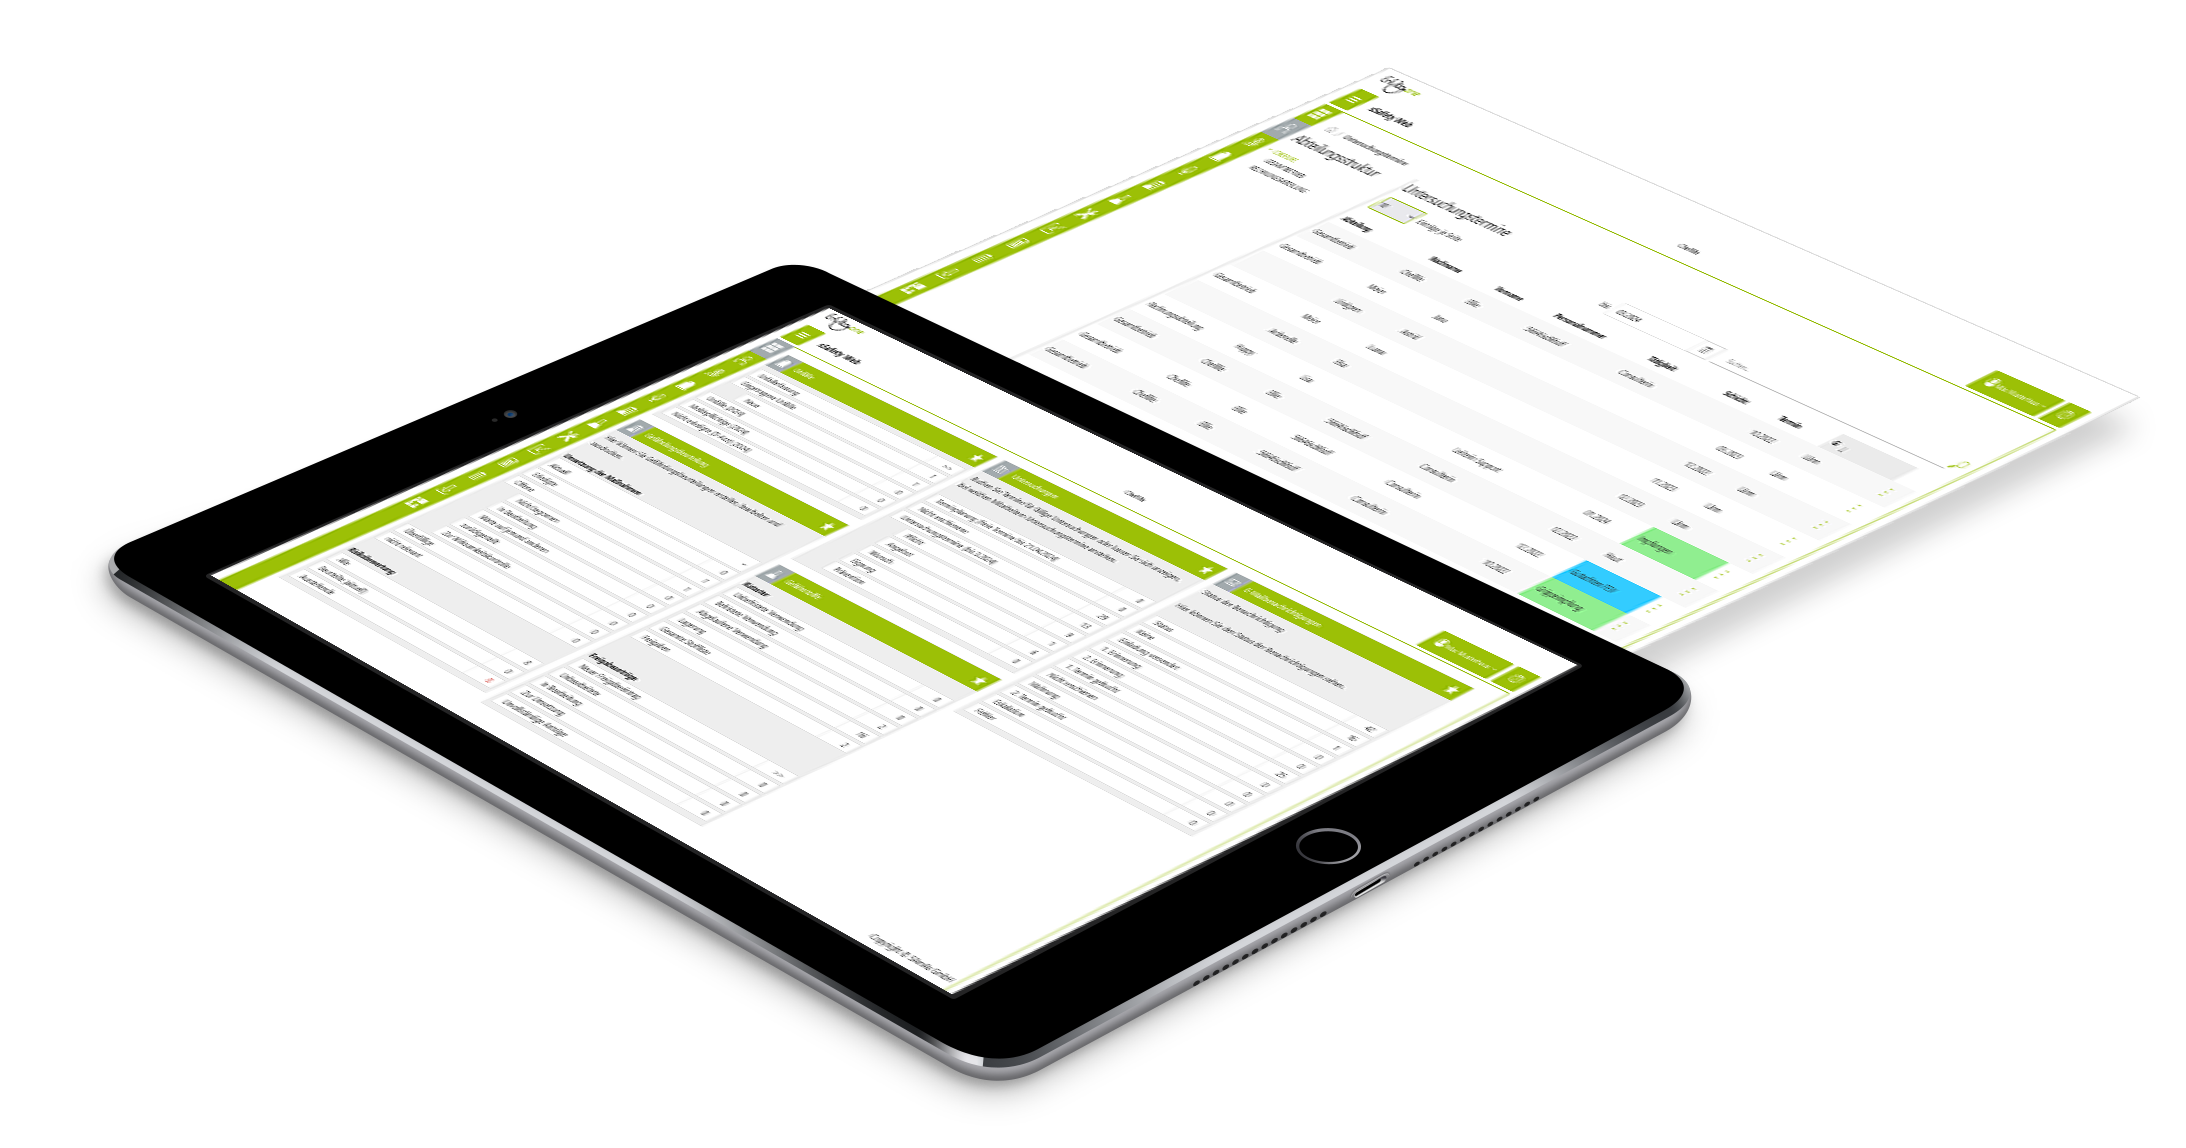 Anmeldung Tablet mit Screen aus der Plattform sSafety Web